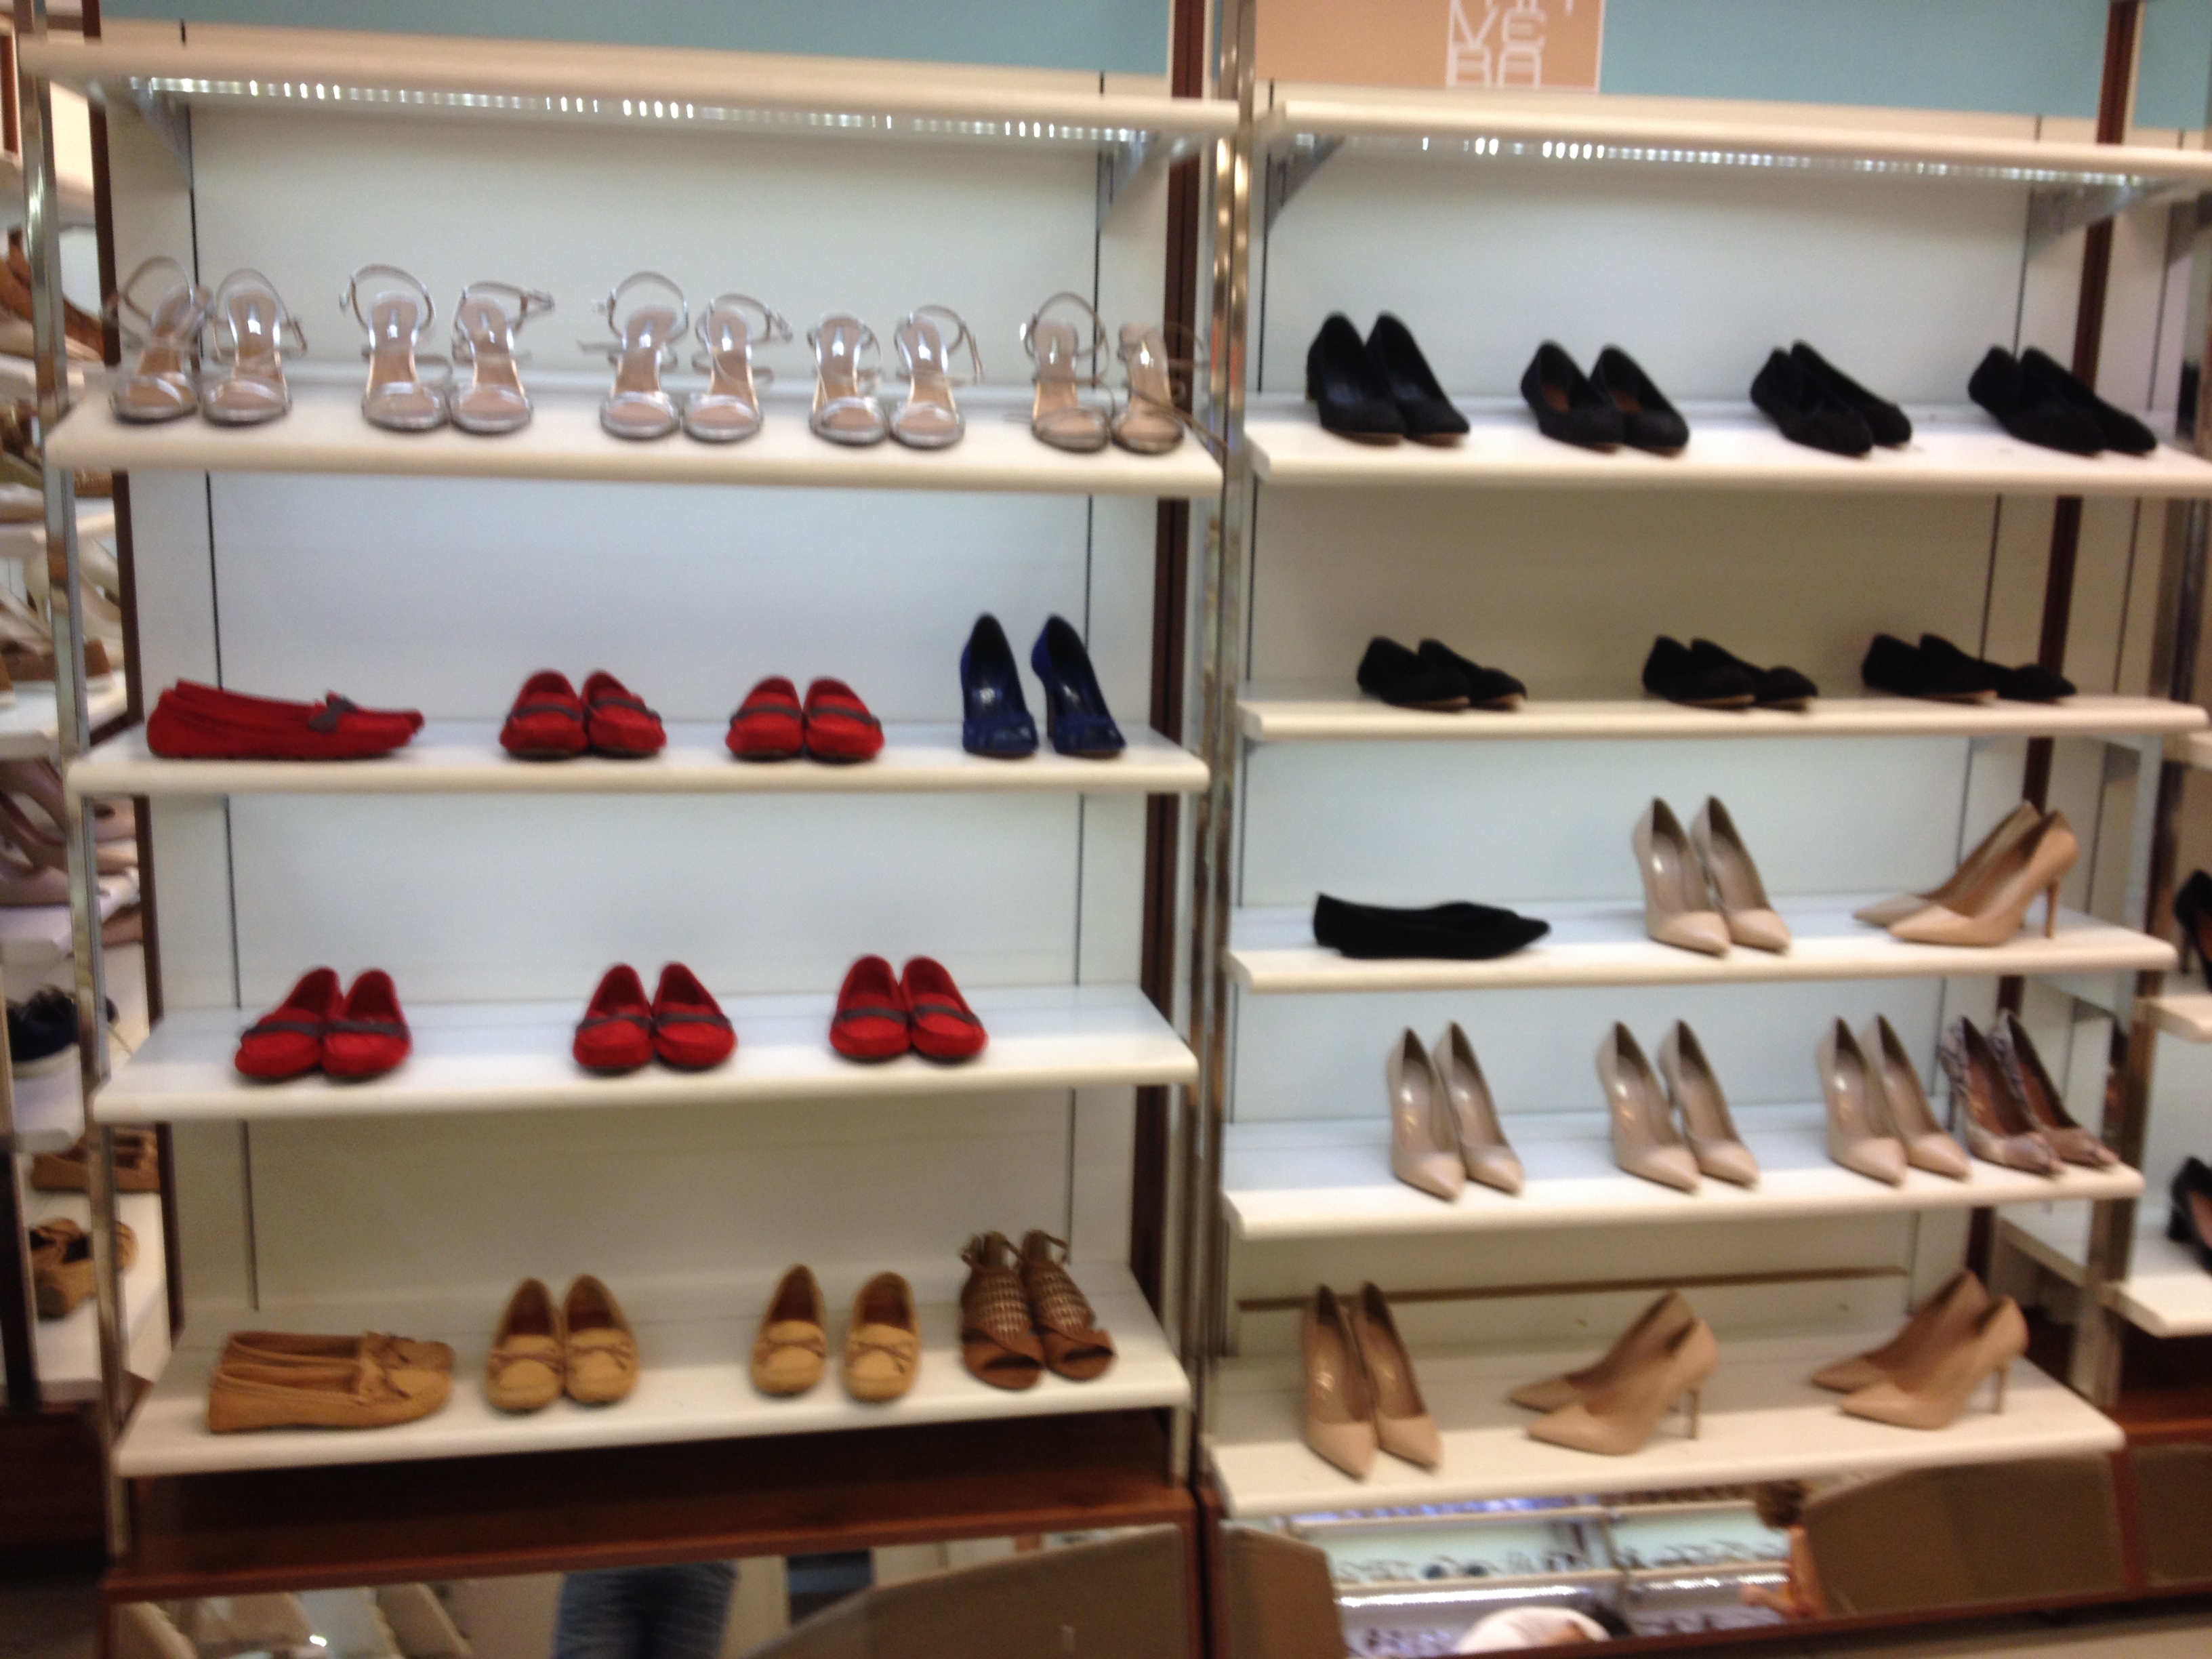 loja de calçados shoestock